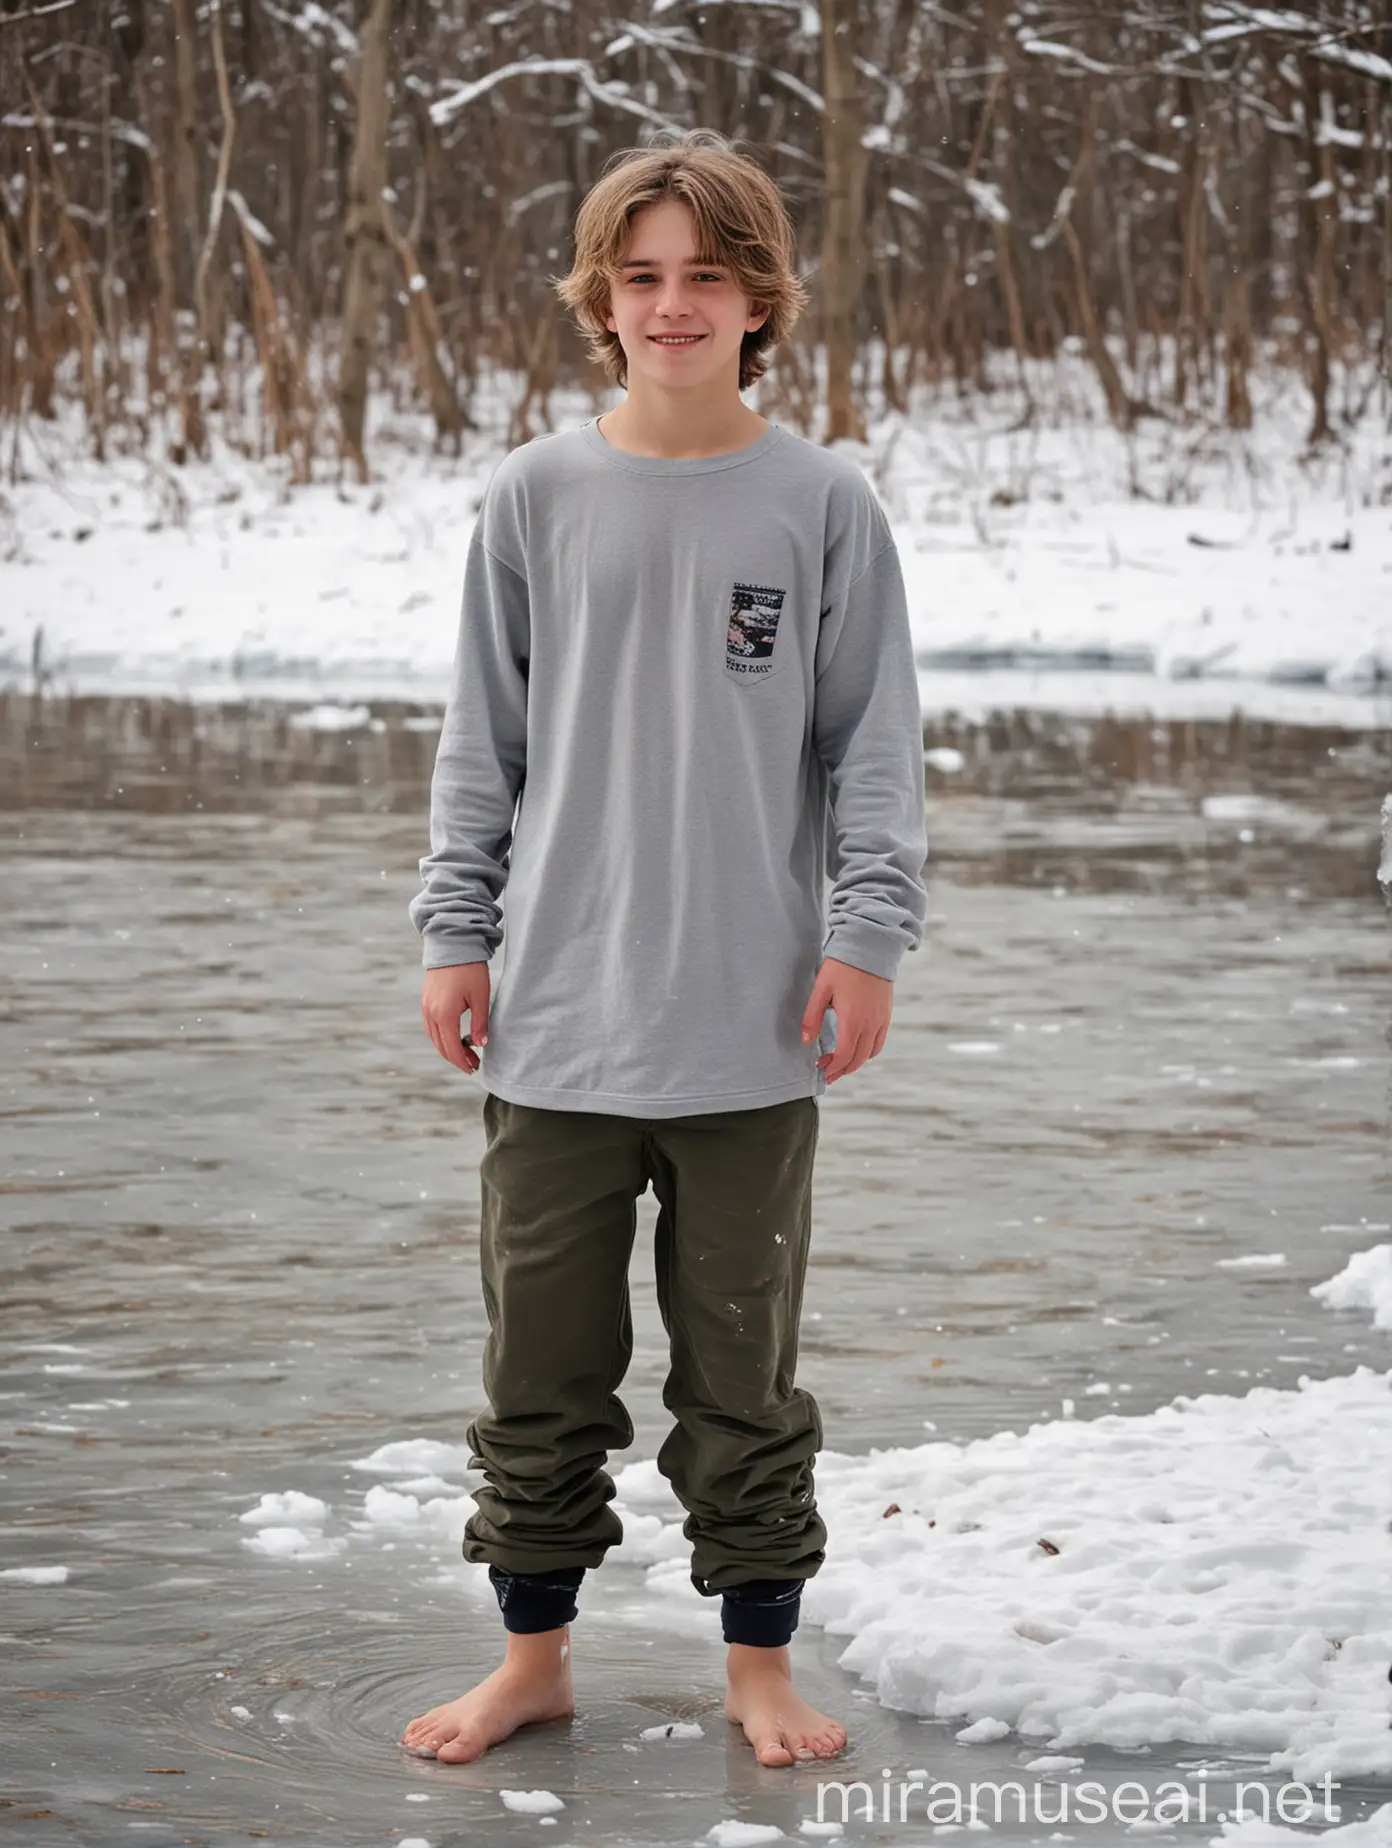 Мальчик подросток юноша 18 лет босиком, светлые волосы, улыбка, босиком, худой, тонкий, футболка, широкие длинные штаны, босые ноги, снег, лед, замерзшее озеро, зима, лес, экстремальное закаливание.